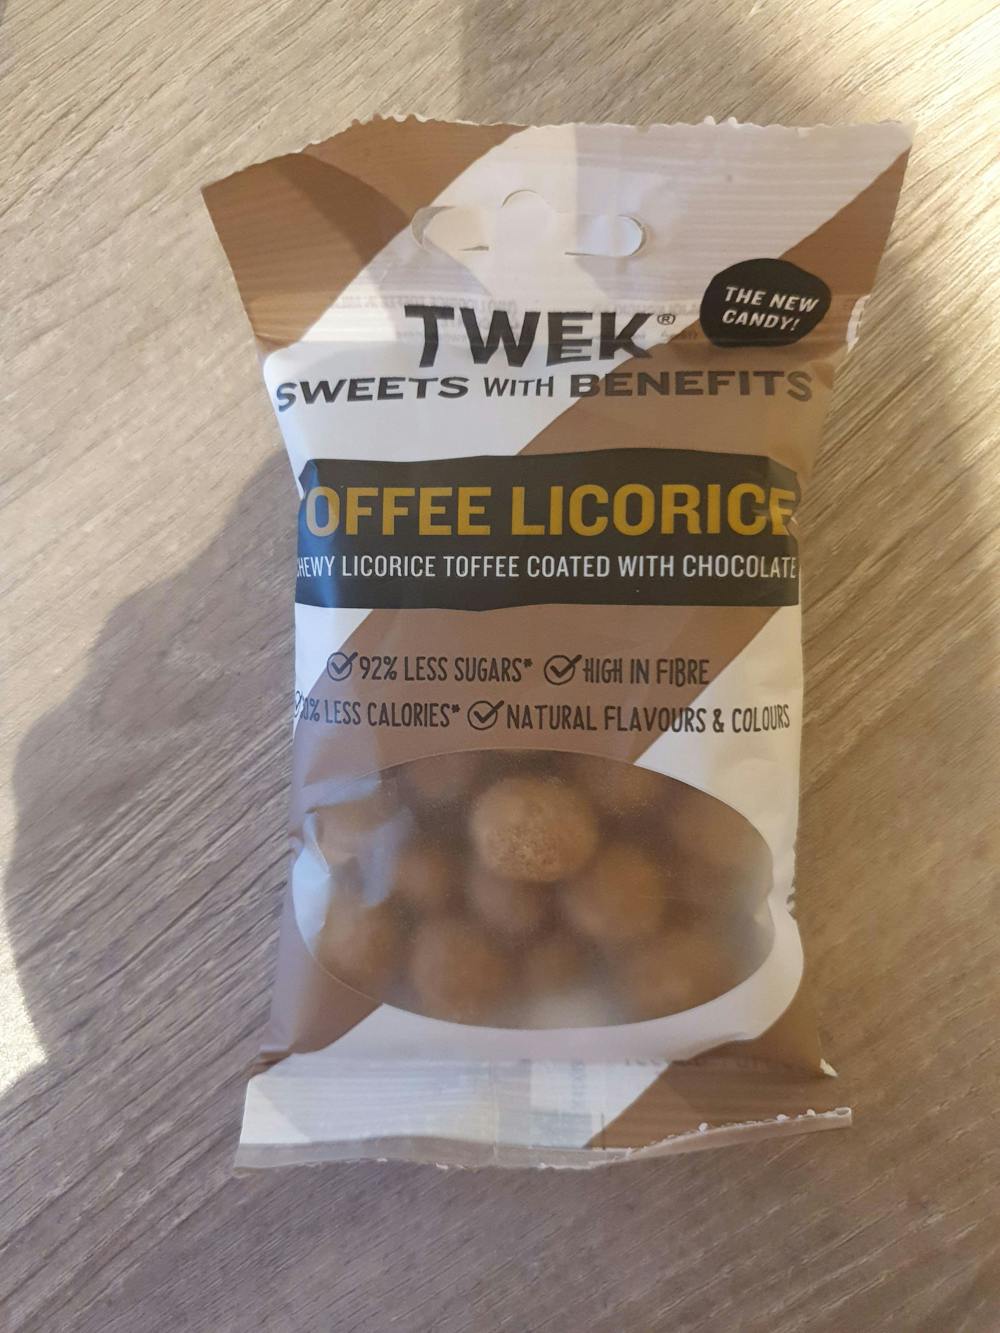 Toffee licorice, Tweak